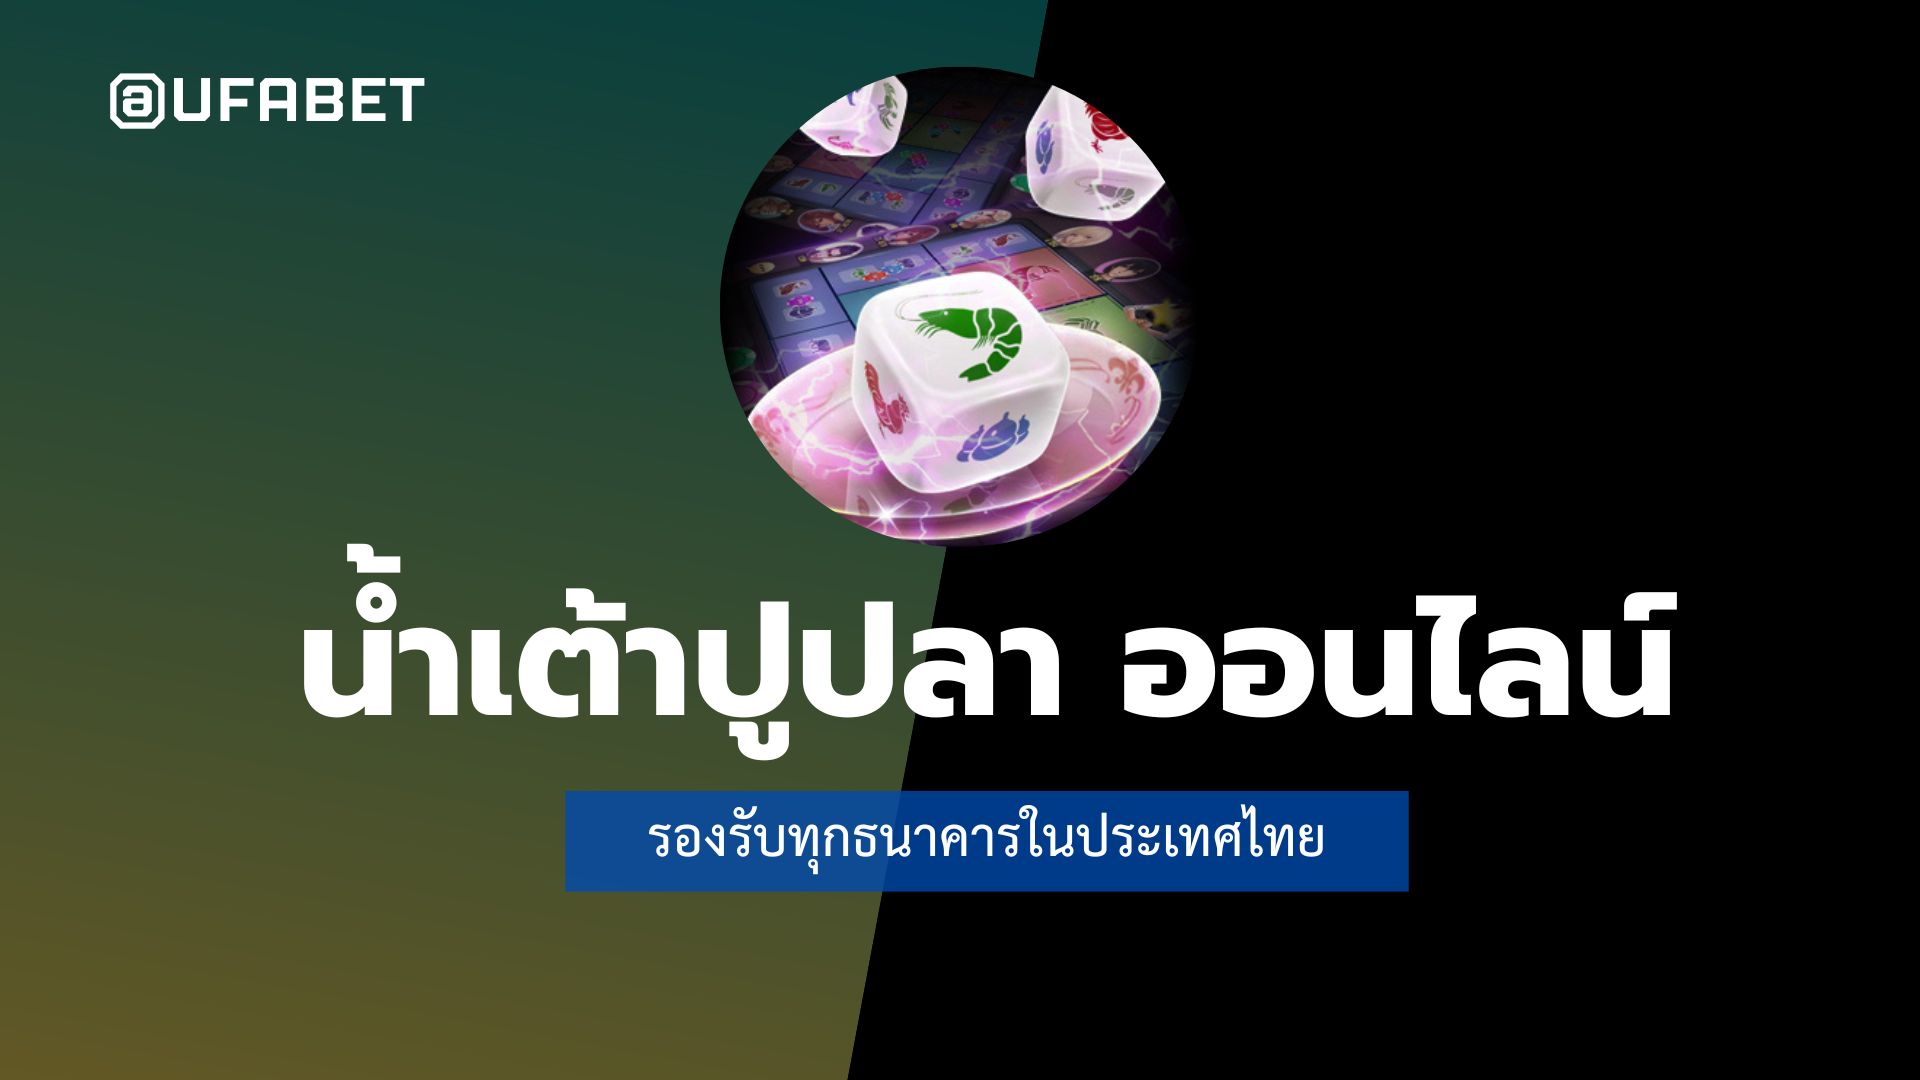 น้ำเต้าปูปลา ออนไลน์ รองรับทุกธนาคารในประเทศไทย